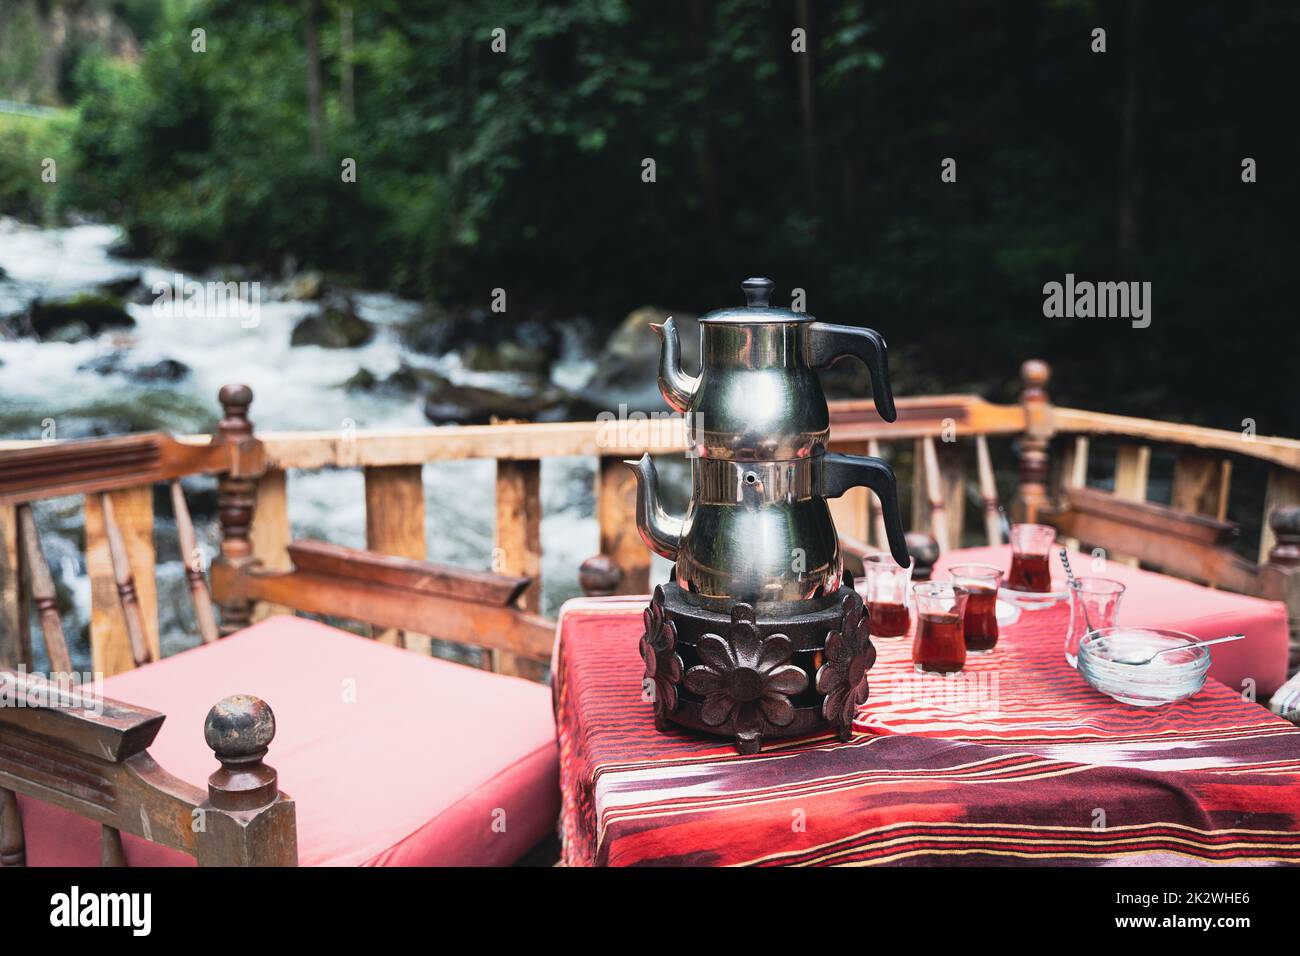 Vista frontal de la tradicional pava turca cromada té y vasos servidos en una mesa de restaurante con sillas cerca de un río en un ambiente al aire libre Foto de stock